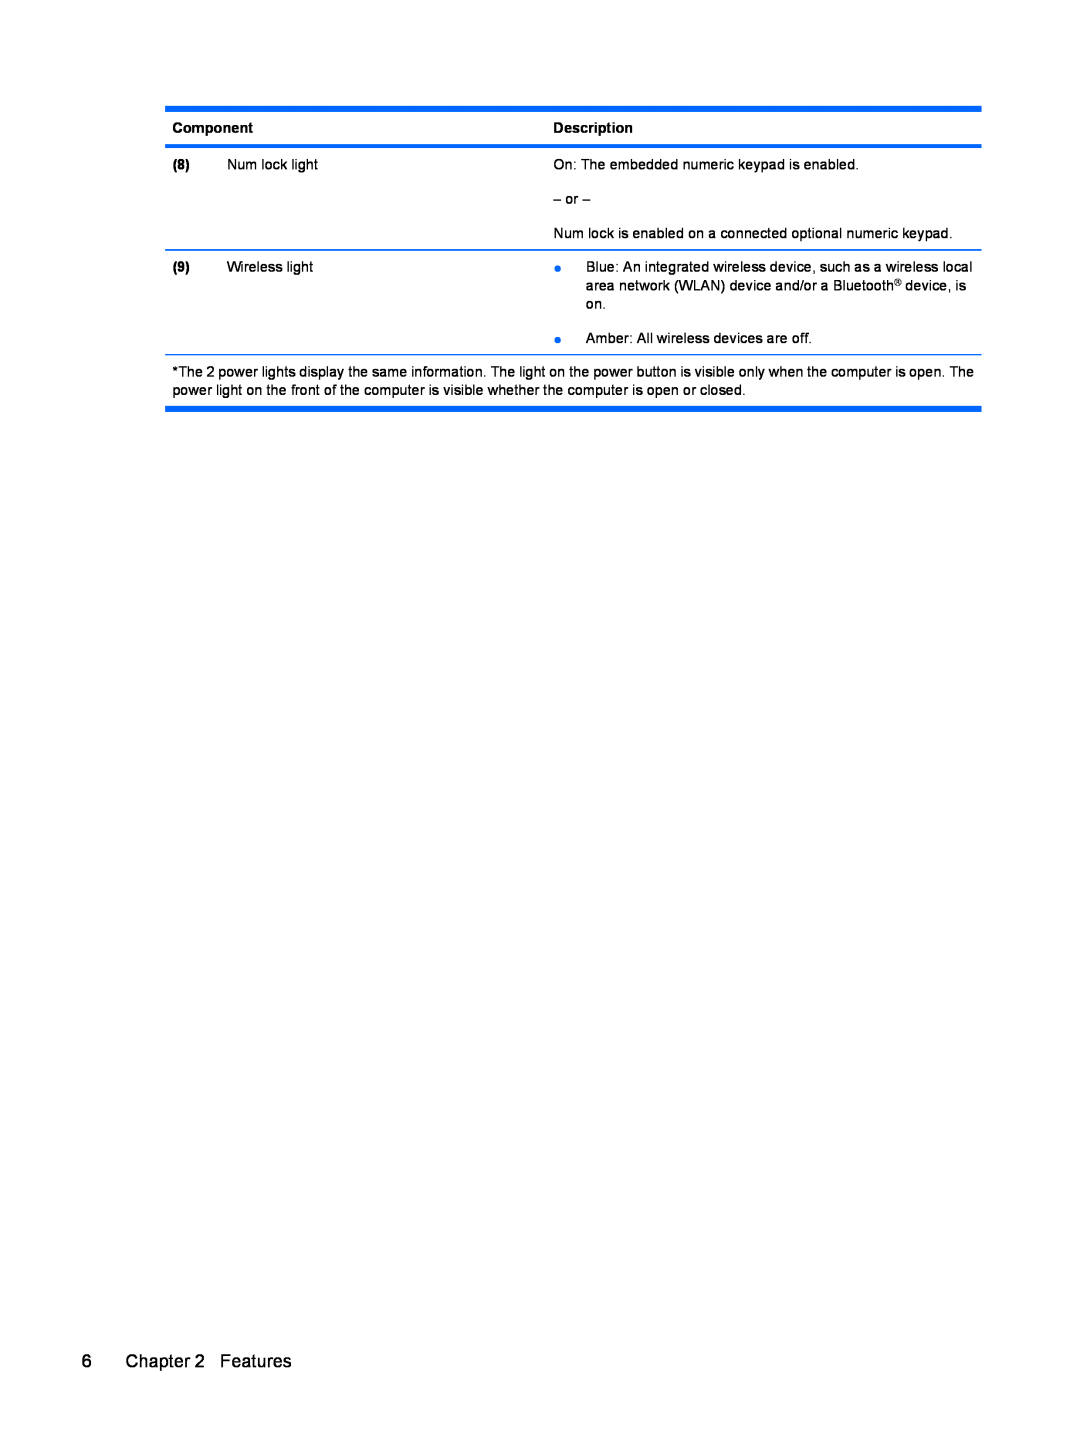 HP dv4-2160us manual Features, Component, Description 